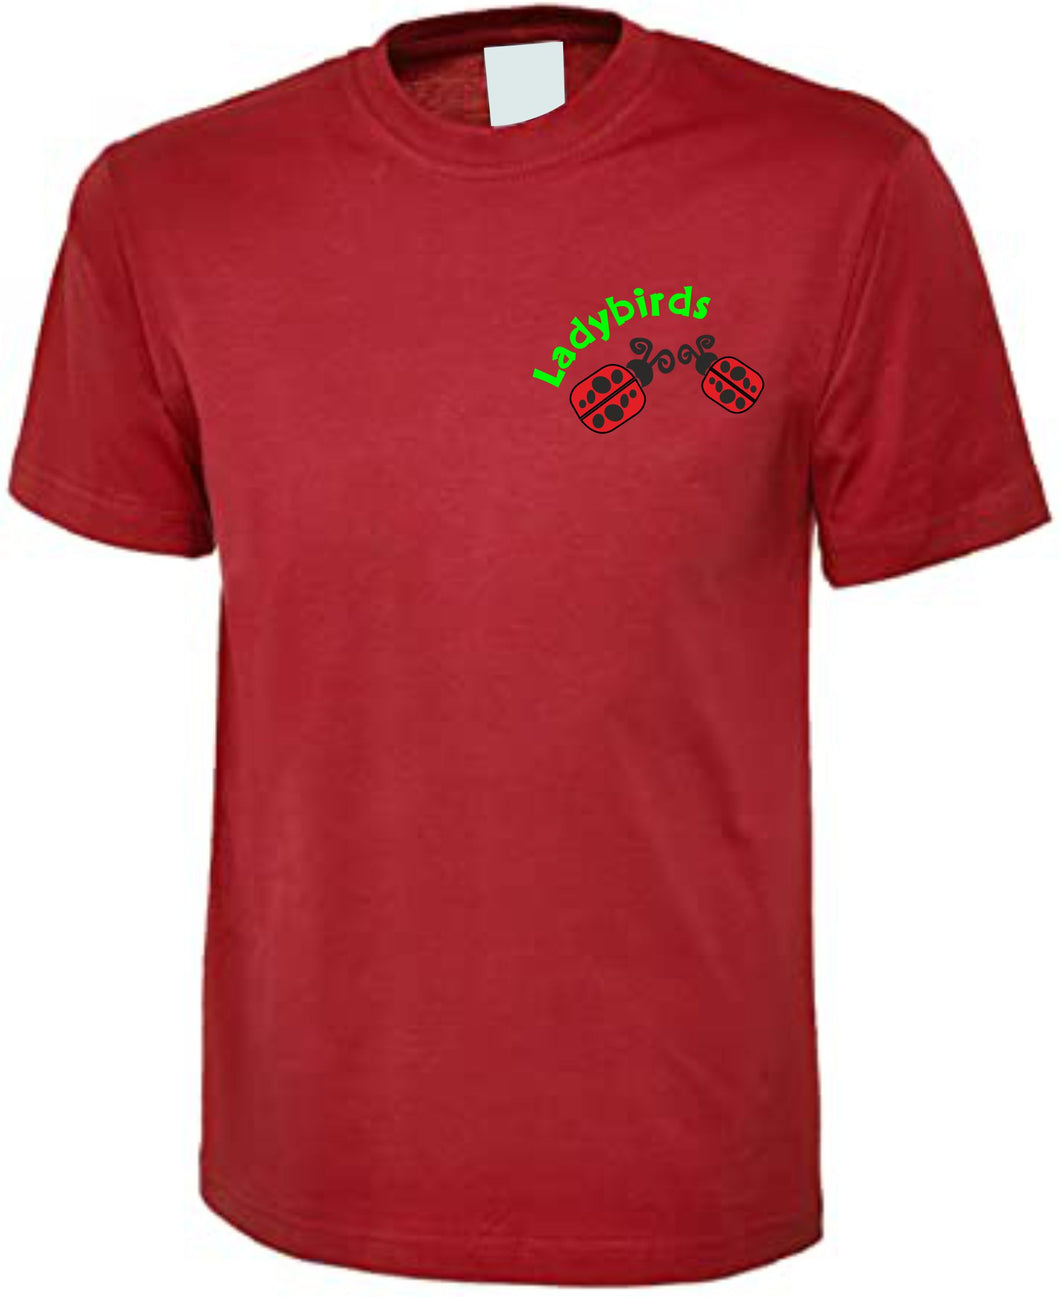 Ladybirds T-shirt